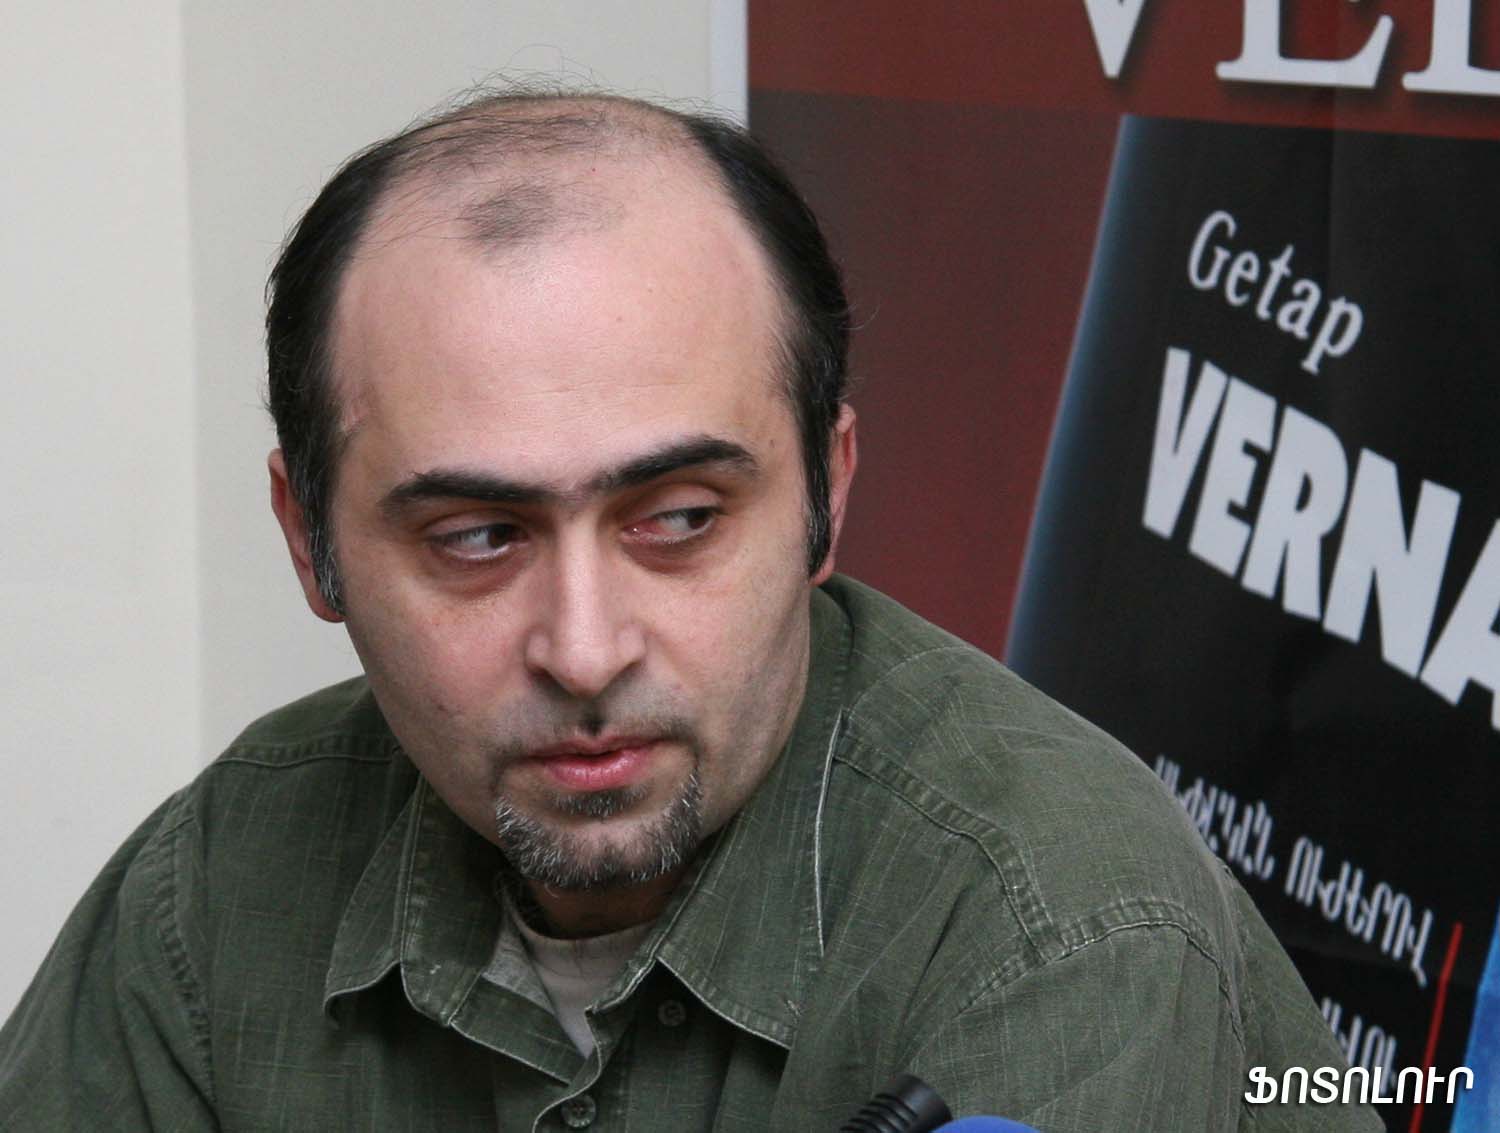 Սամվել Մարտիրոսյան. «Թվիթեր»-ի միջոցով Ալիեւն իր համար նախագահ նացիոնալիստի իմիջ է ստեղծել